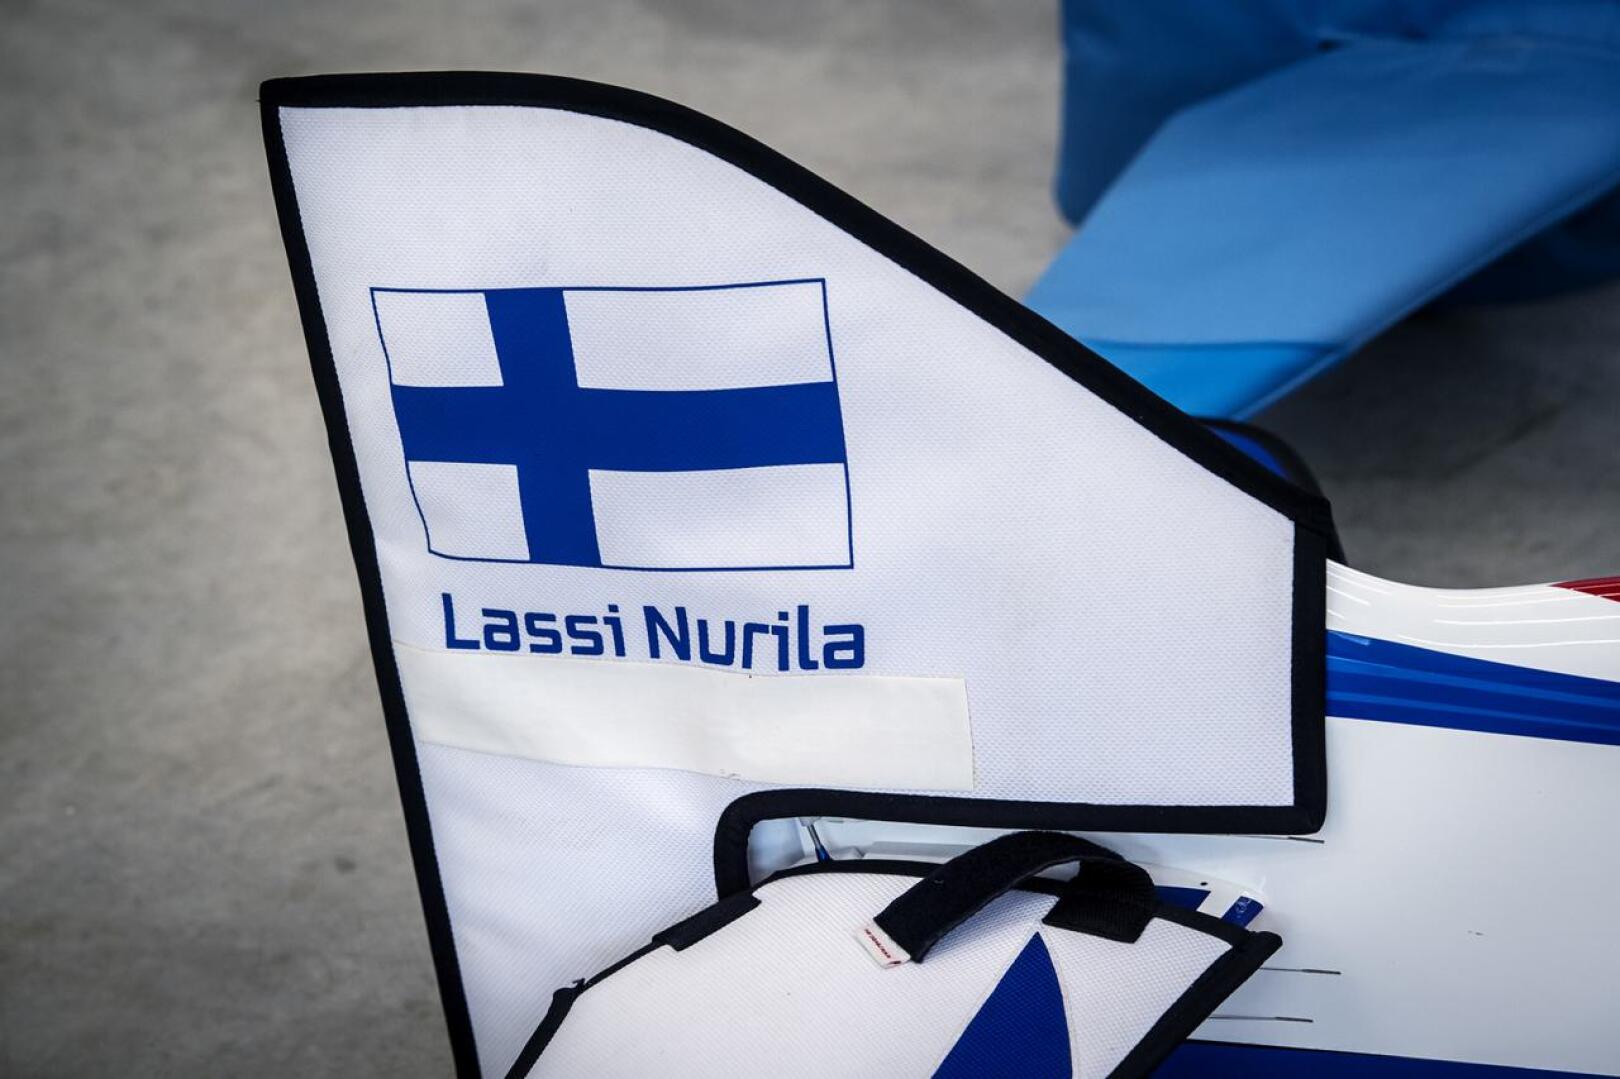 Lennokkiurheilun F3A-luokan maailmancupissa Lassi Nurila on kilpaillut vuodesta 2010 lähtien. Sinä aikana suomalaisia pilotteja on hänen lisäkseen ollut kisoissa kolme.